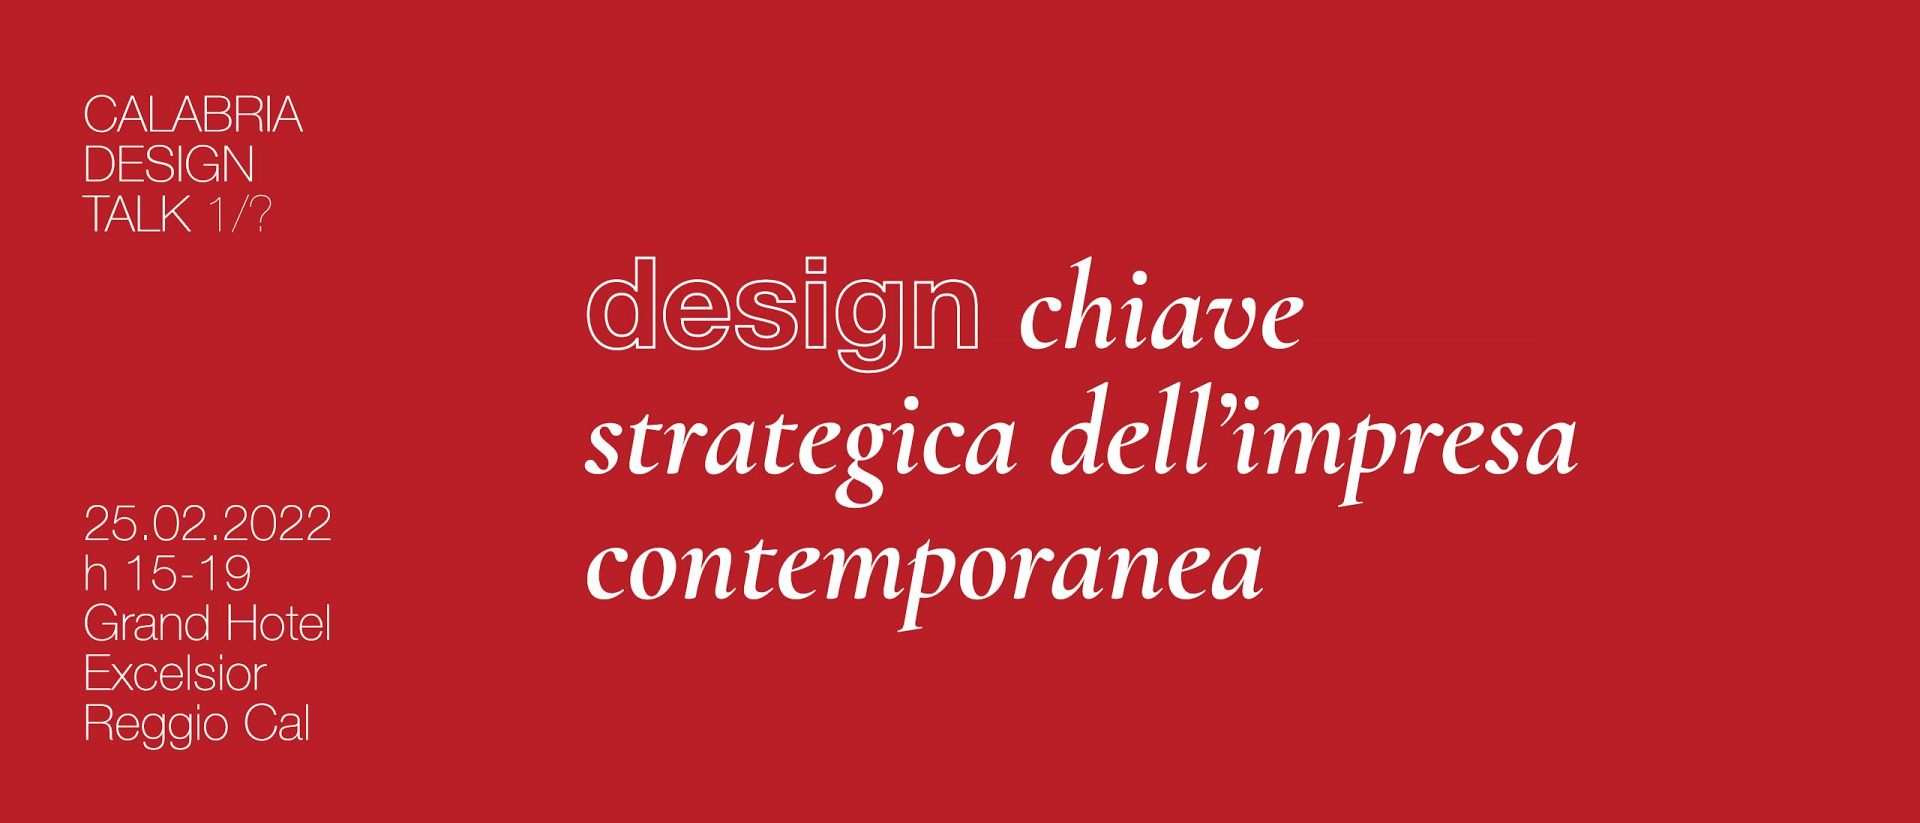 Reggio, al via un ciclo di incontri sul ruolo del design sui territori